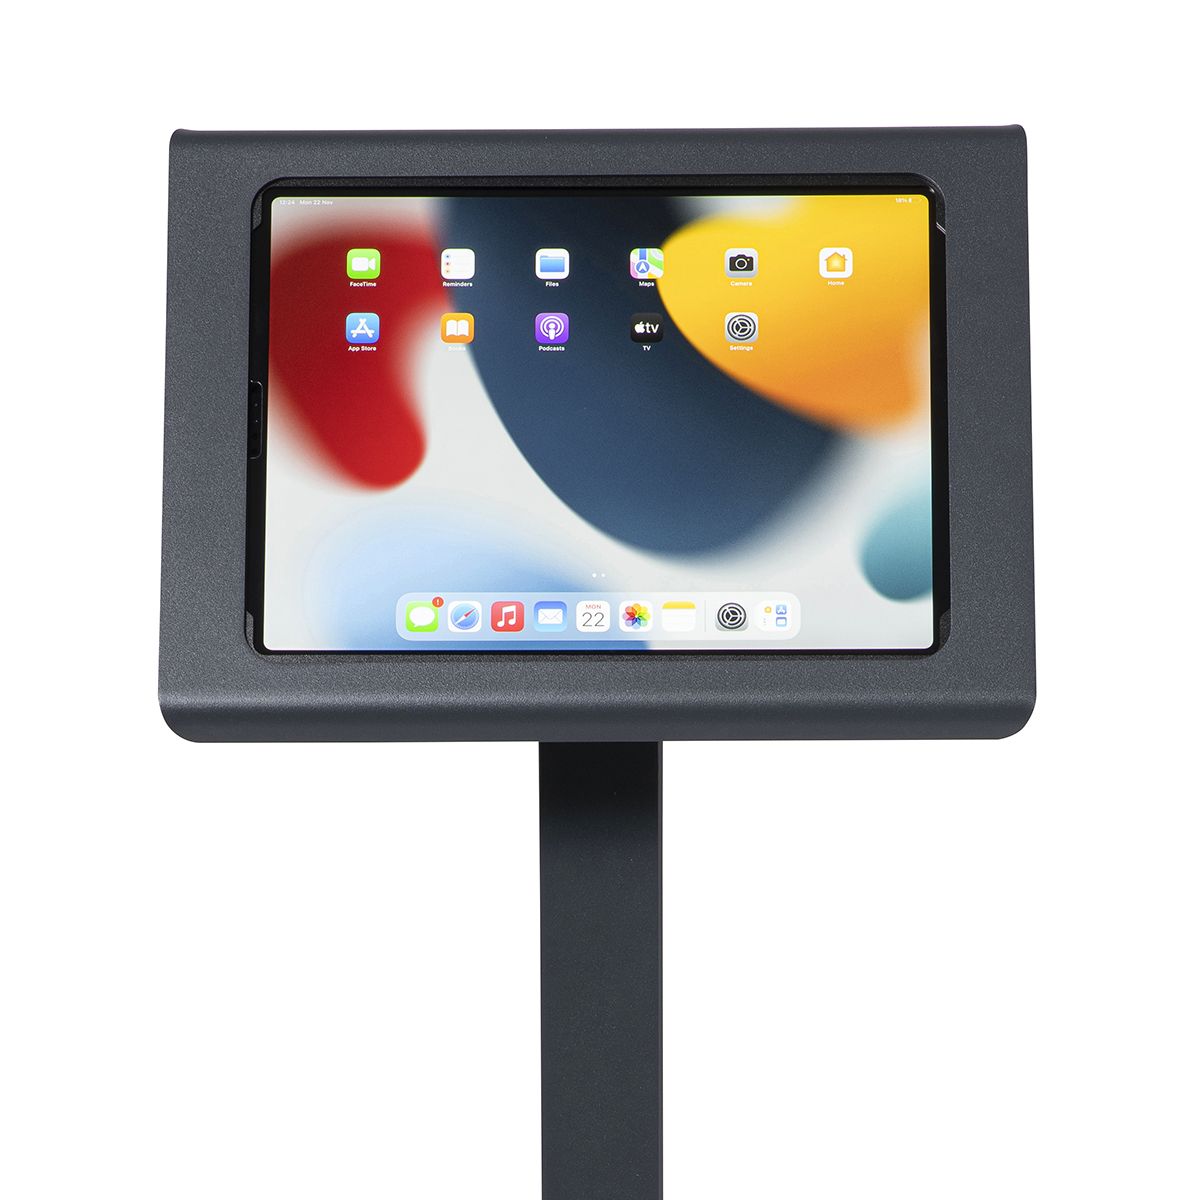 Supporto da banco iPad Pro, iPad Kiosk da banco iPad